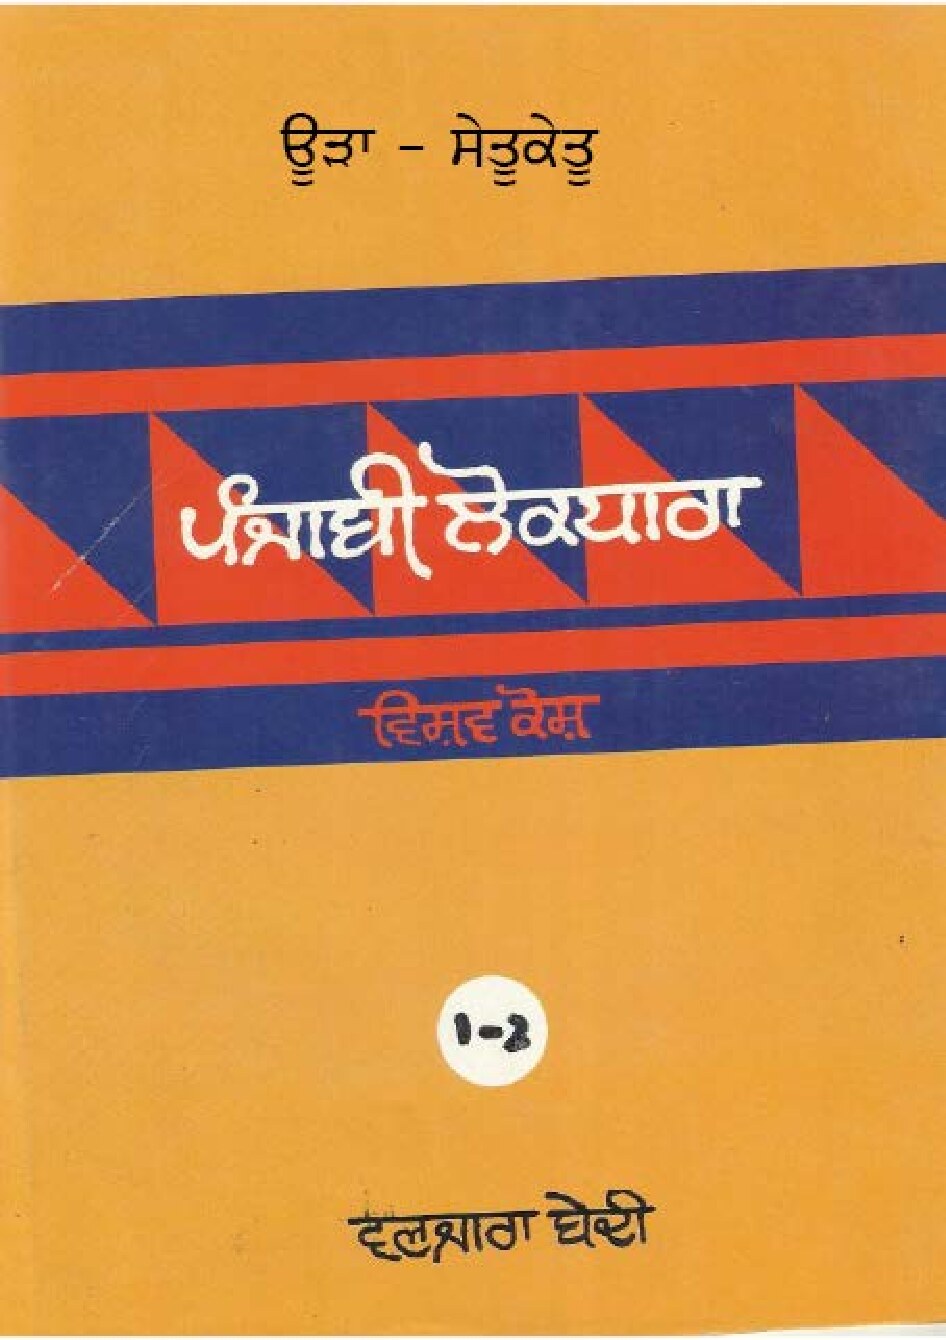 ਪੰਜਾਬੀ ਲੋਕ ਧਾਰਾ - ਵਿਸ਼ਵ ਕੋਸ਼(1-2) - Punjabi Lok Dhara - Vishav Kosh(1-2)